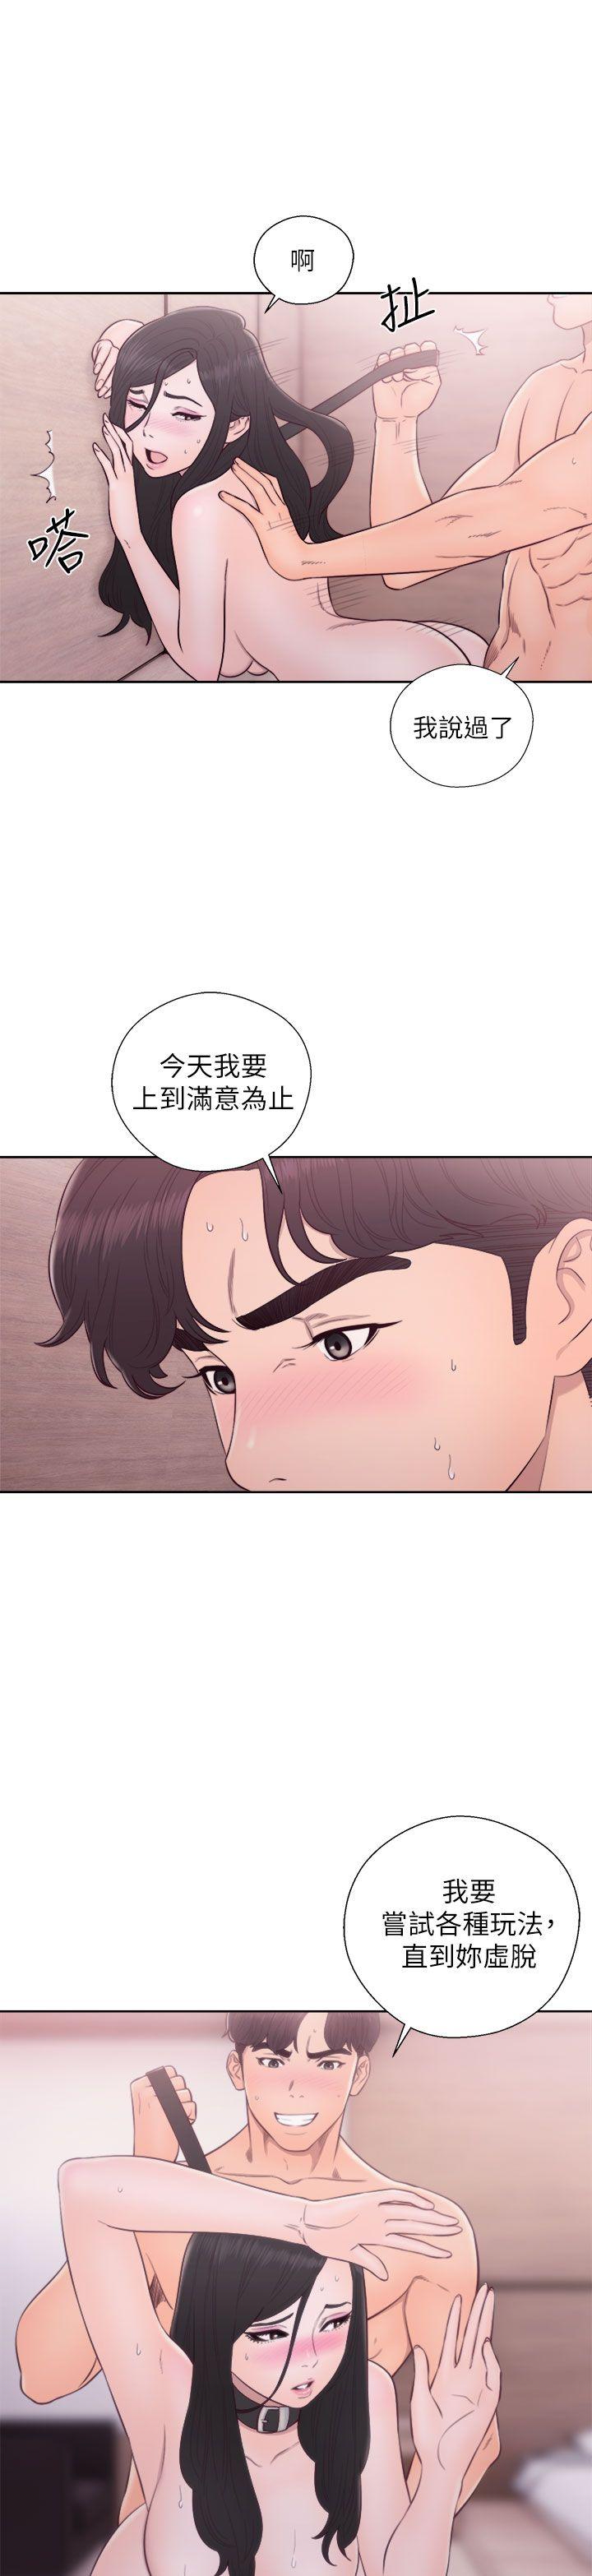 韩国污漫画 青春:逆齡小鮮肉 第29话 10